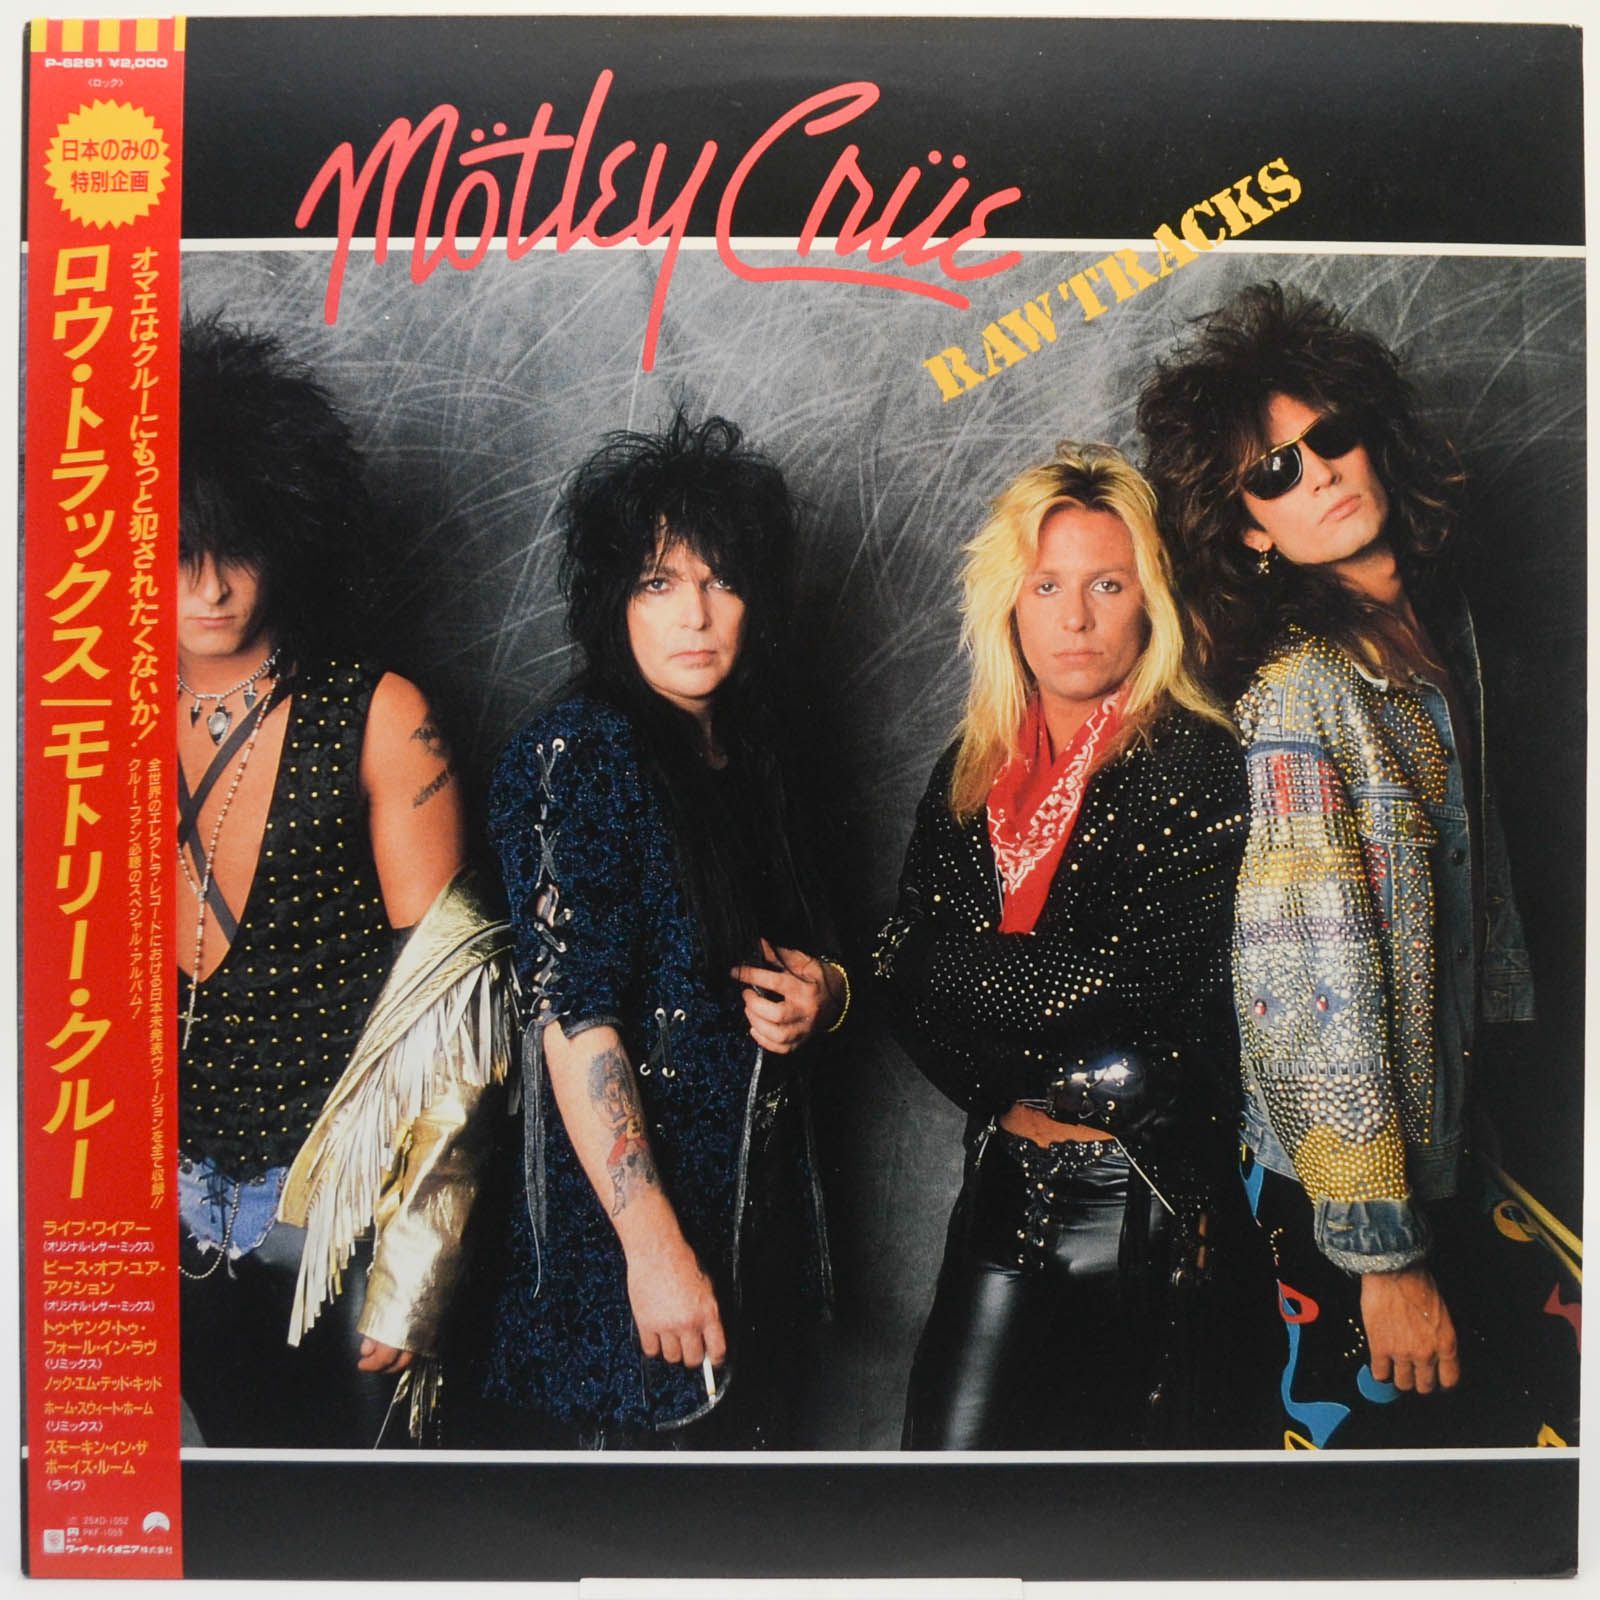 Mötley Crüe — Raw Tracks, 1988